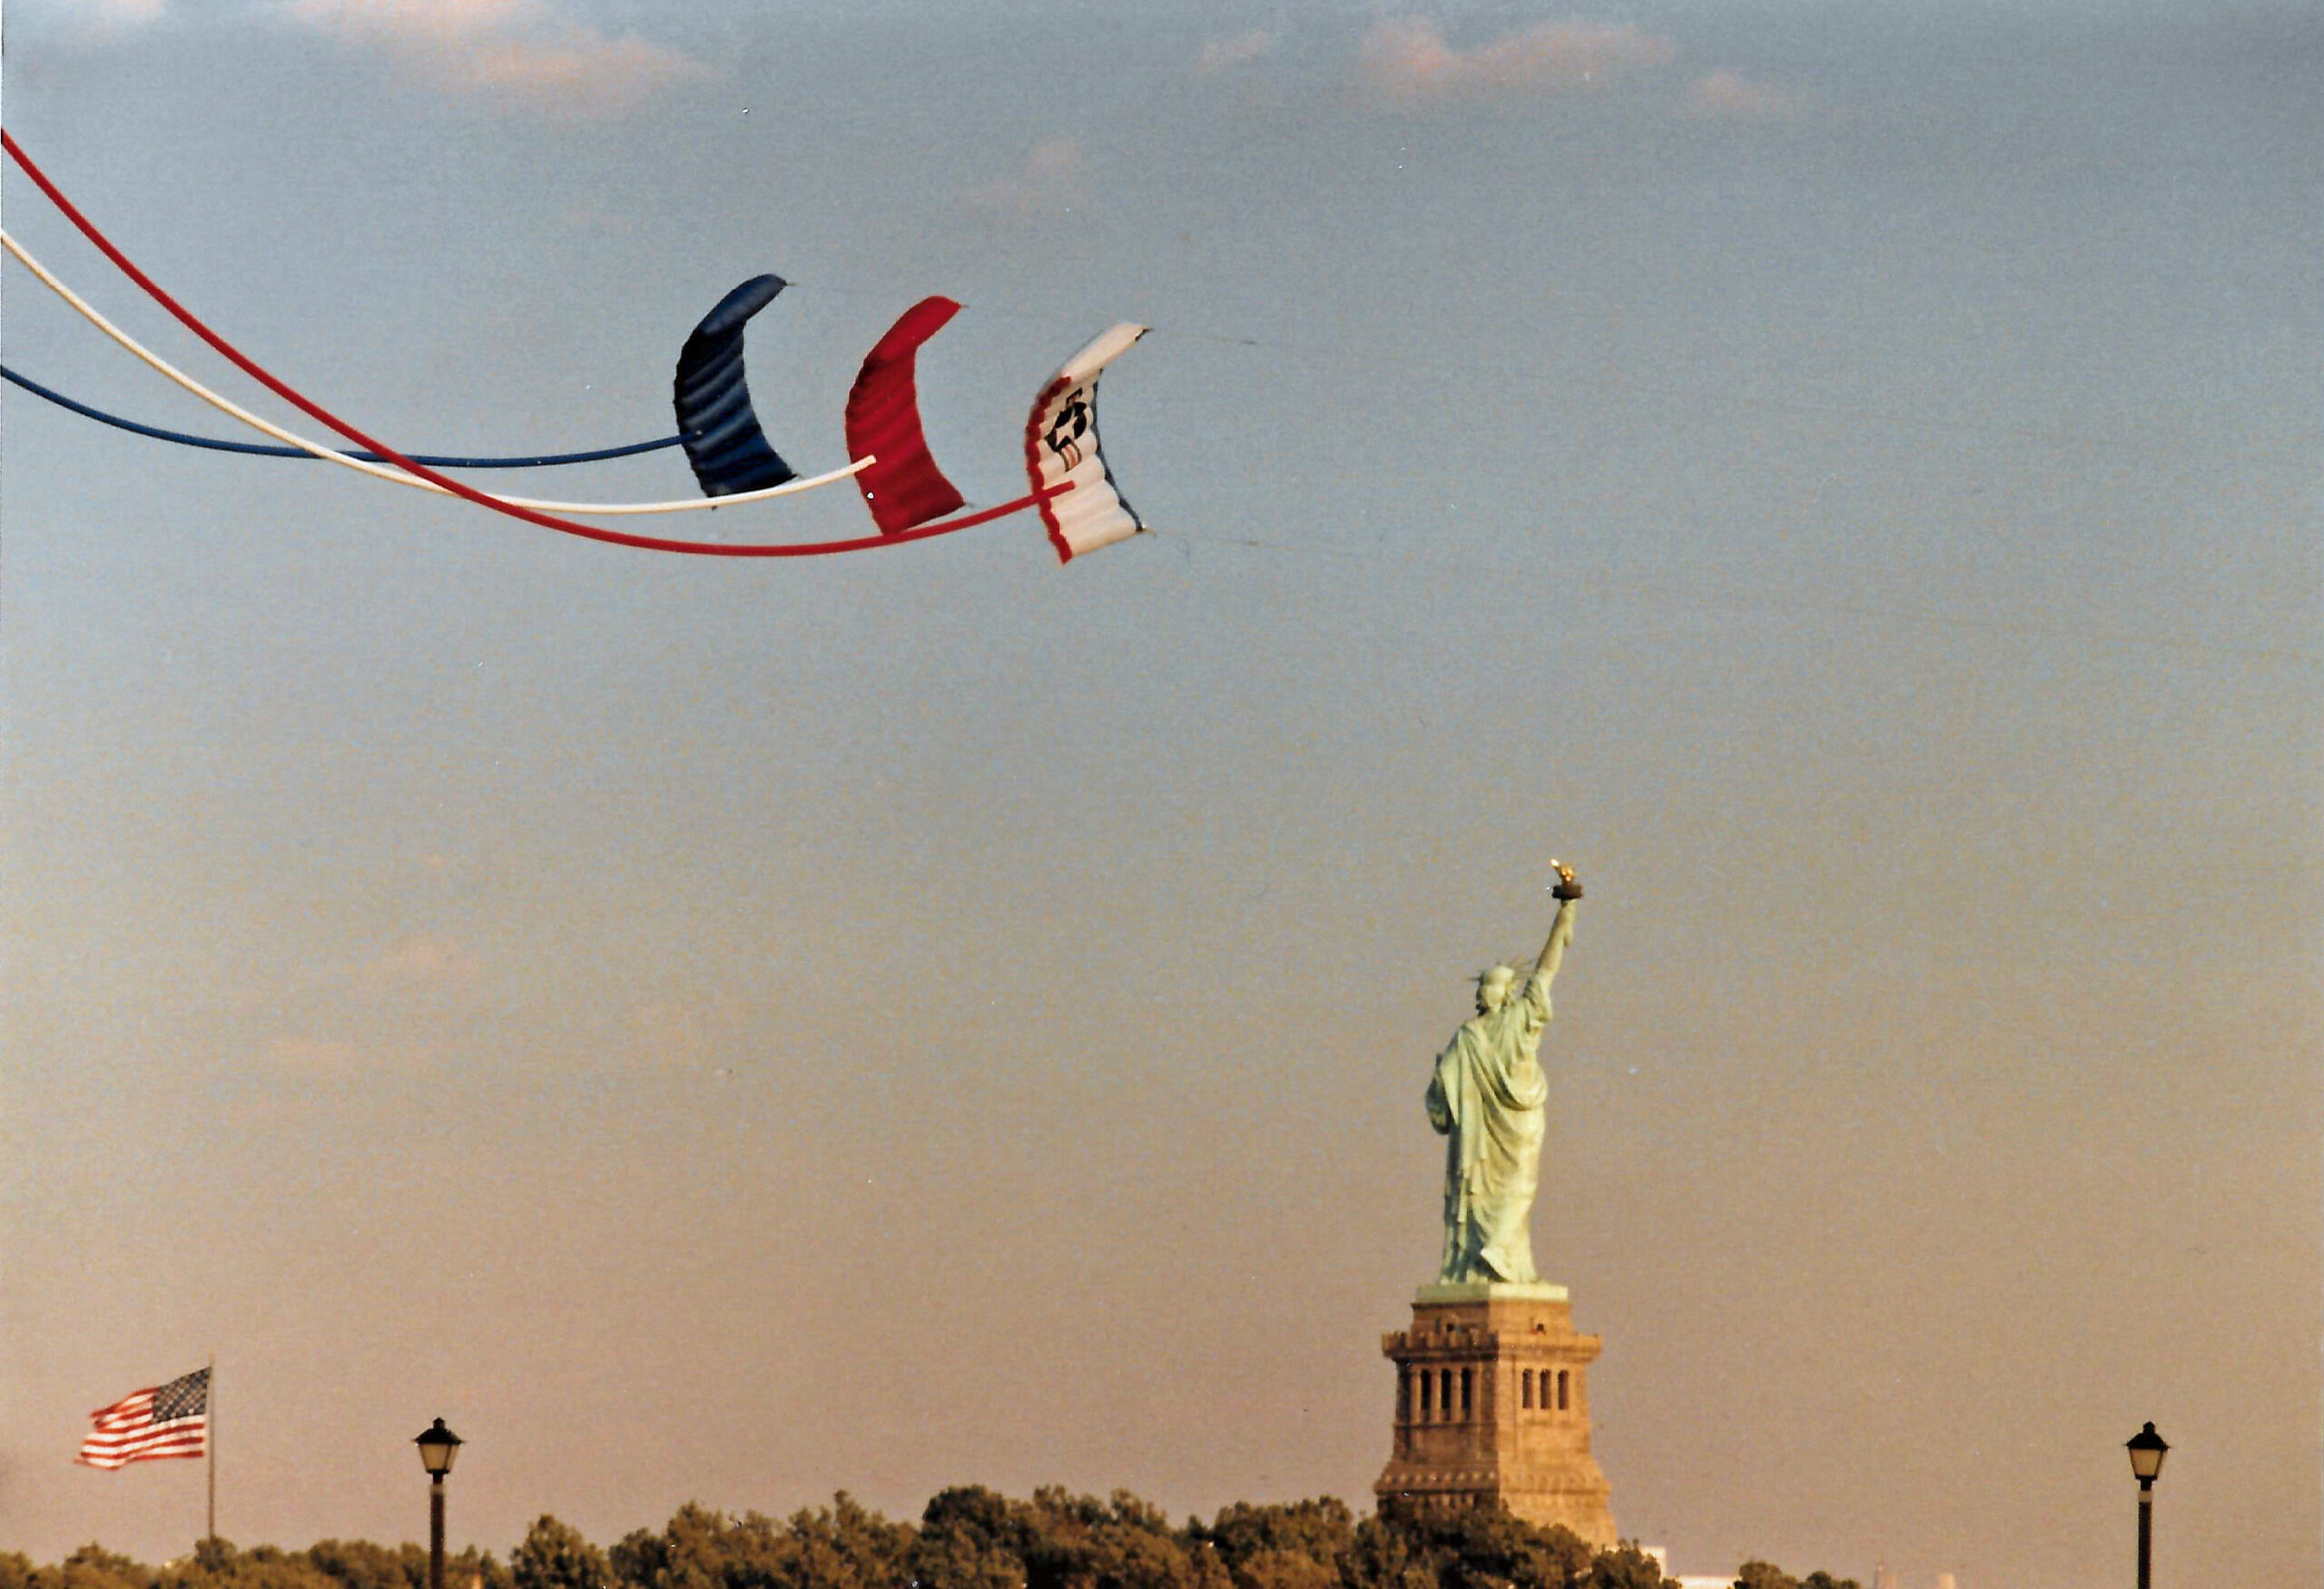 Kite Over Liberty